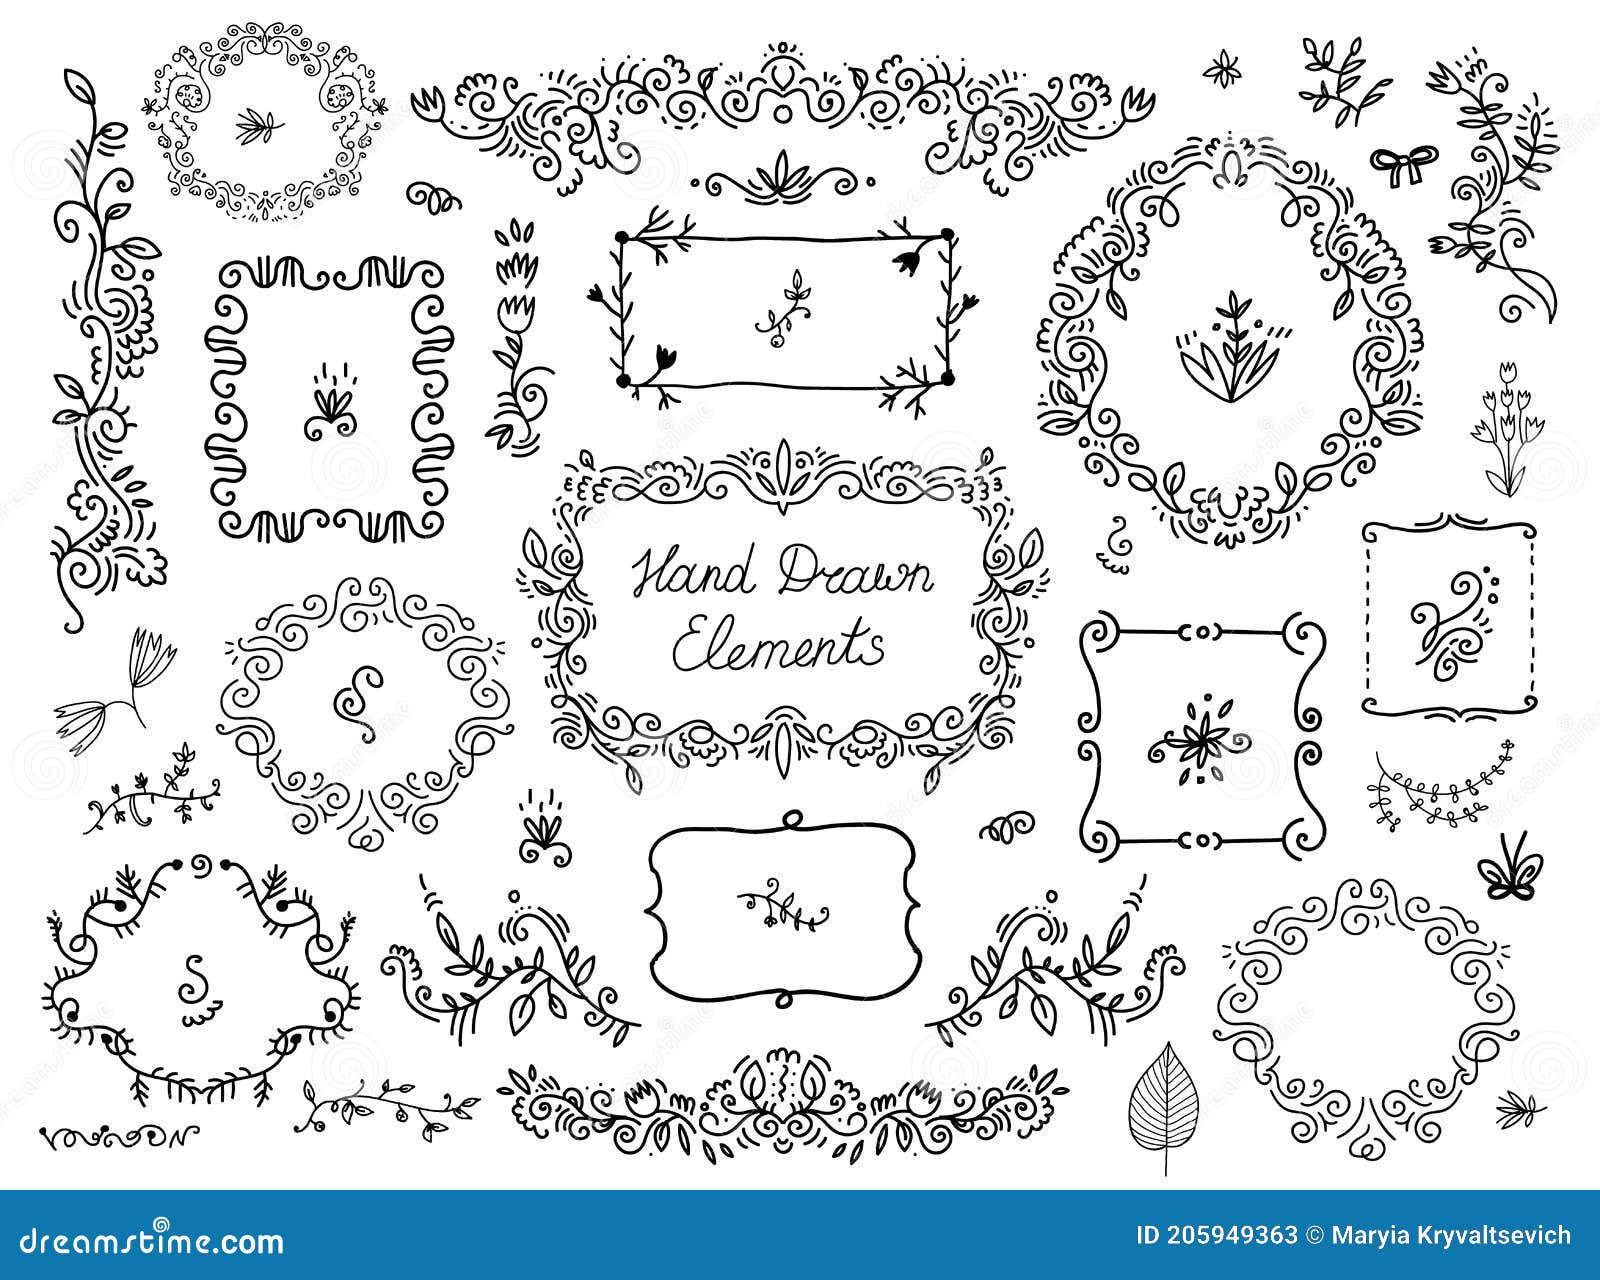  set of floral doodle grames, dividers, handdrawn s